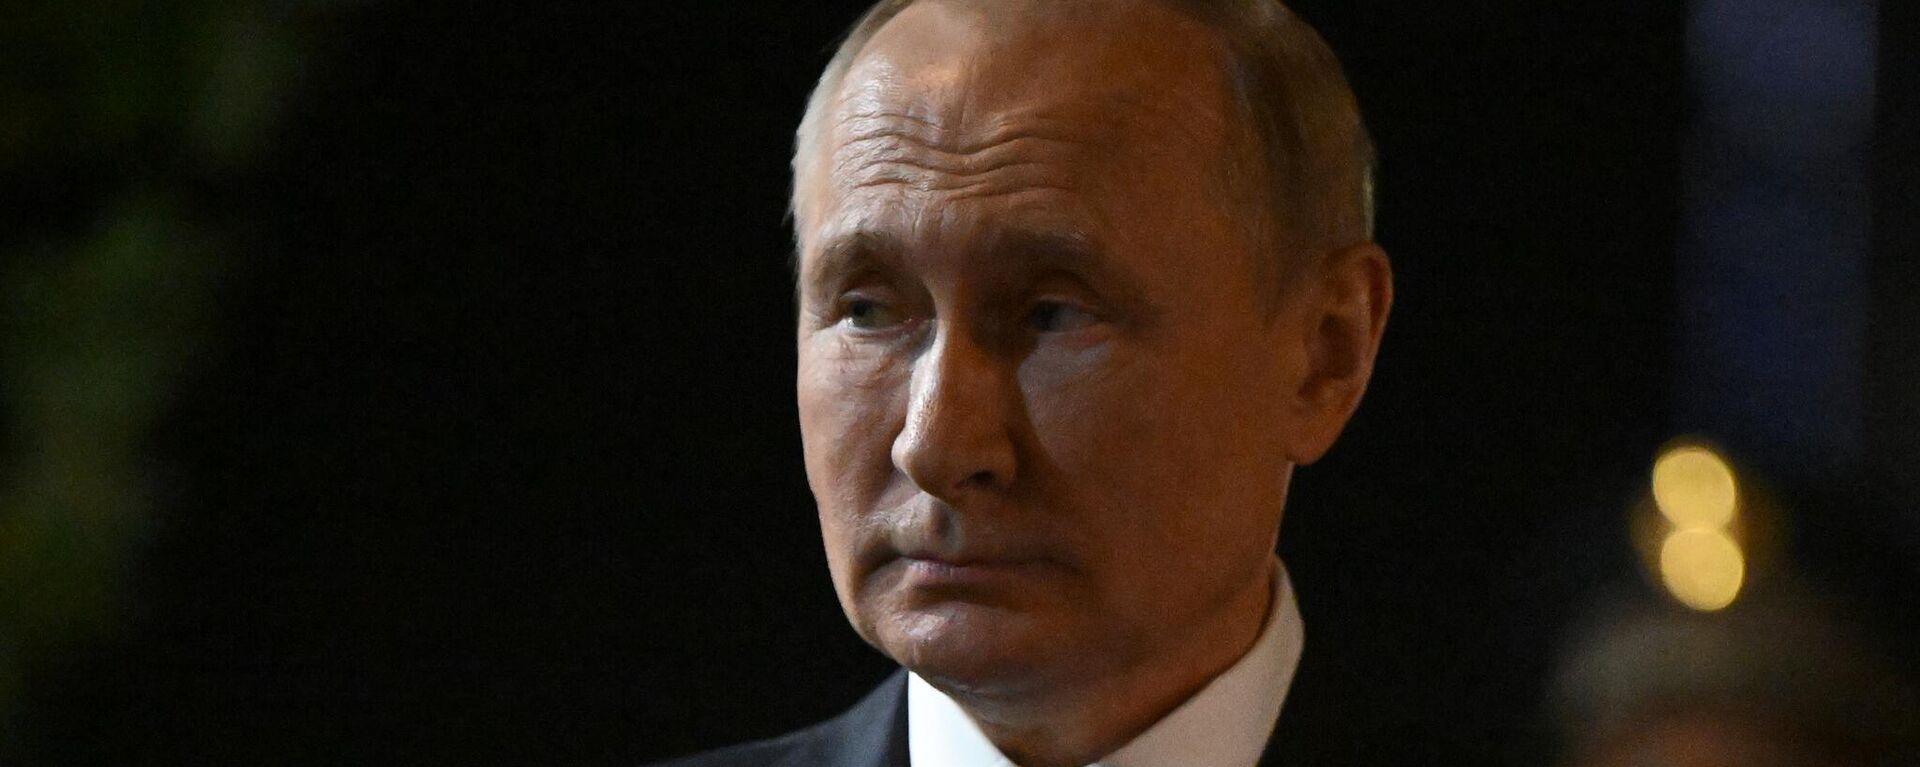 Руски председник Владимир Путин на самиту ШОС у Самарканду - Sputnik Србија, 1920, 16.09.2022